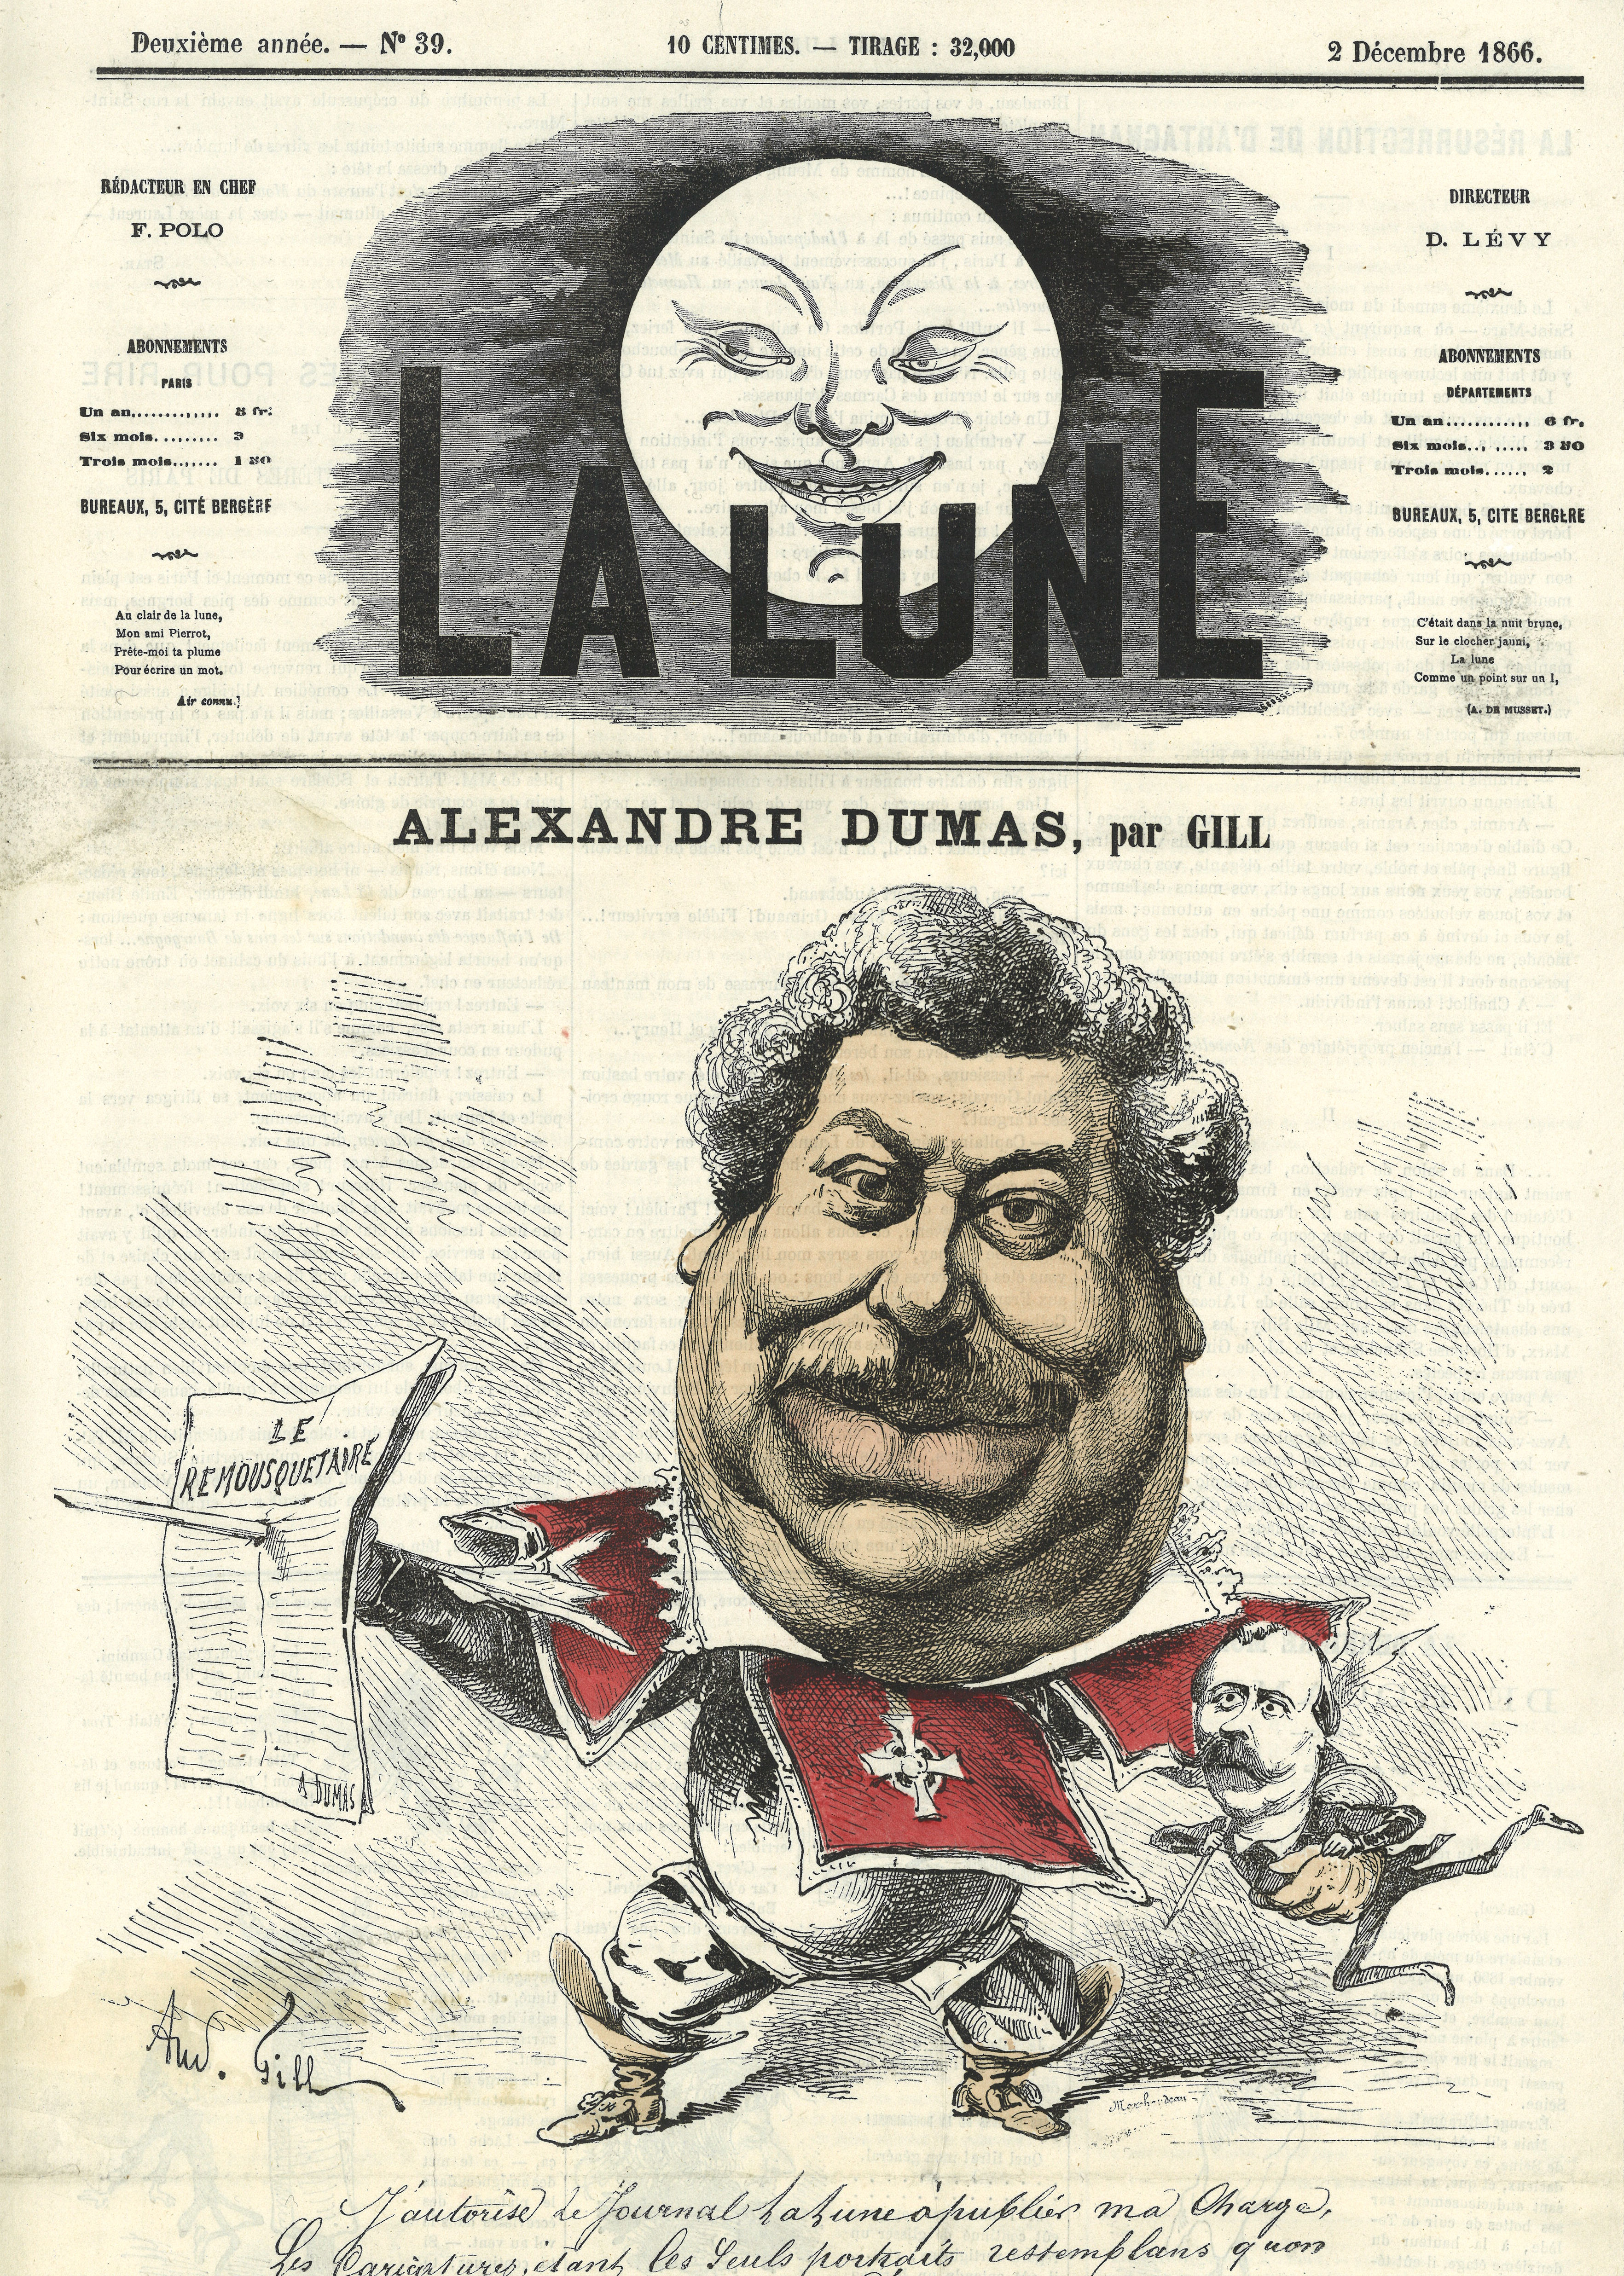 caricatura de Dumas por André Gill (1866)